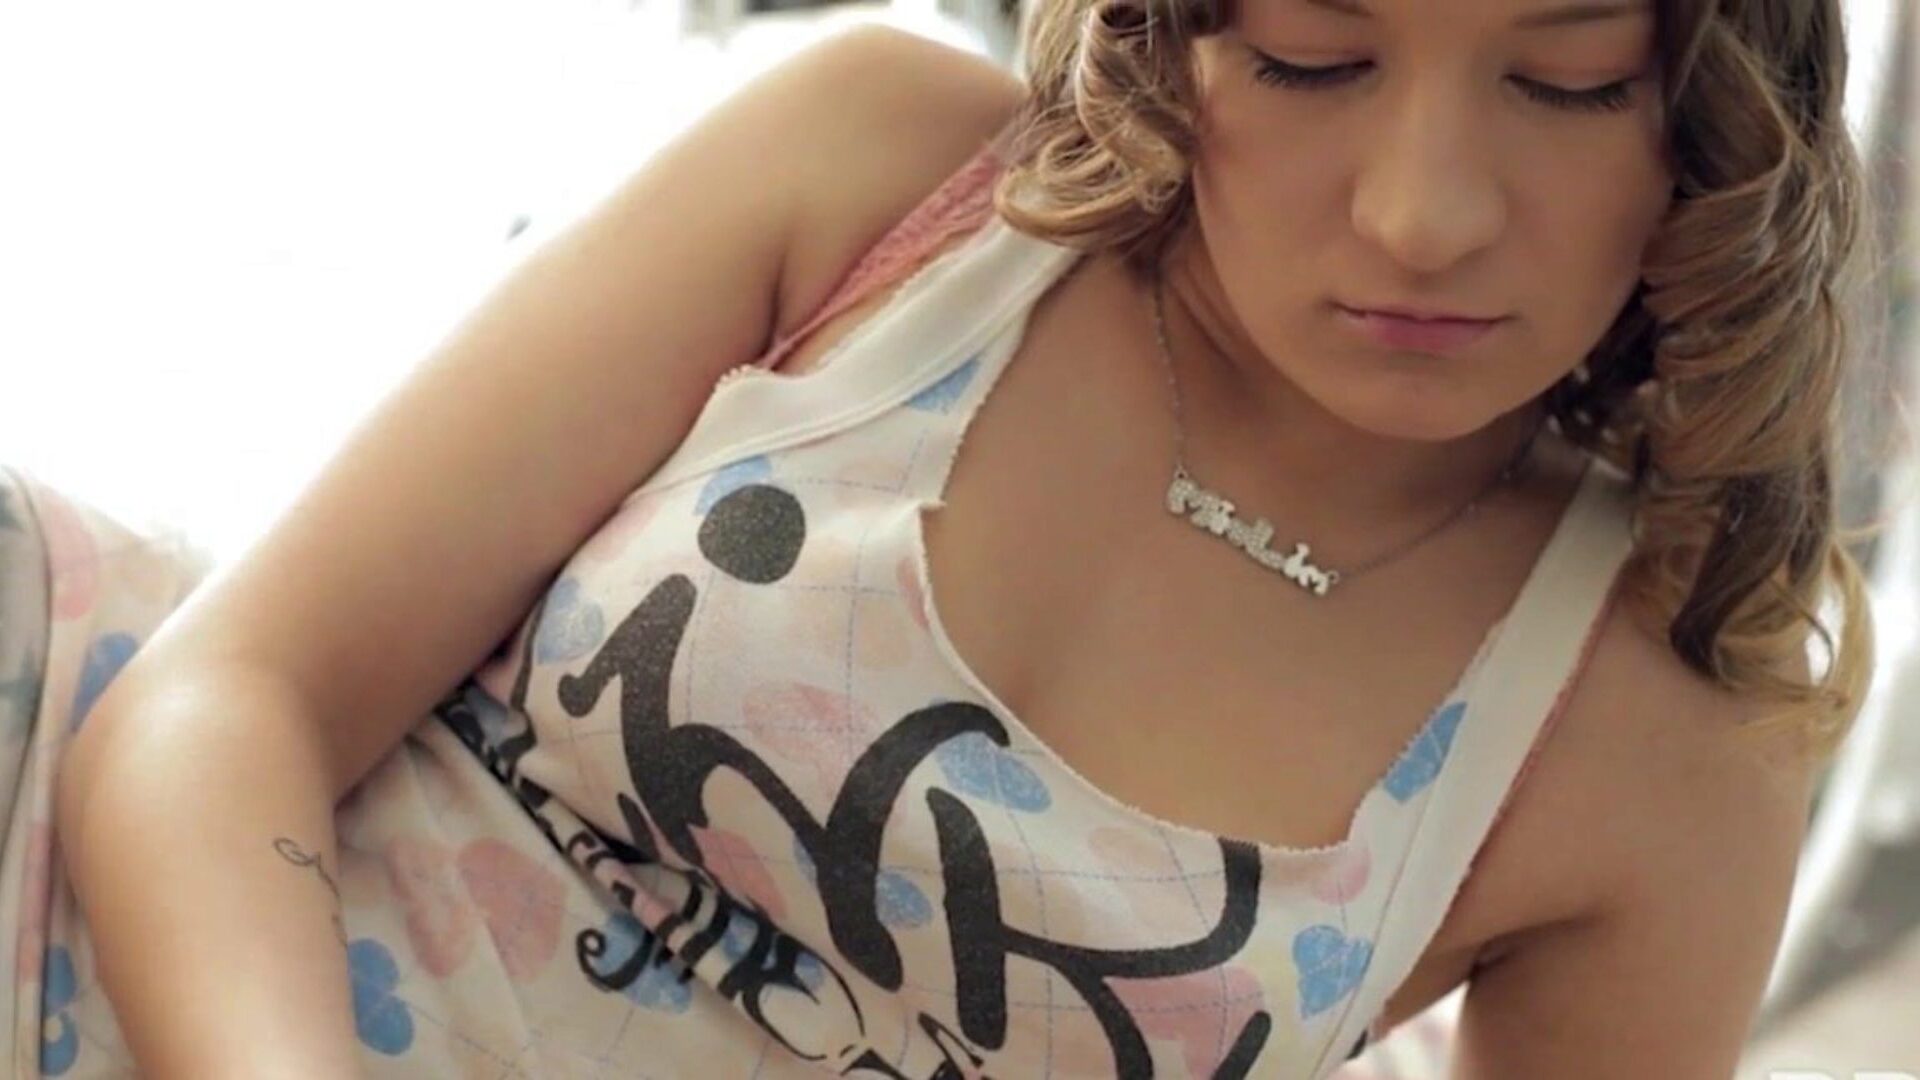 liderlig ukrainsk lovlig alder teenager parvin har hendes glædelige skaldede skede stukket testikler uforklarlige